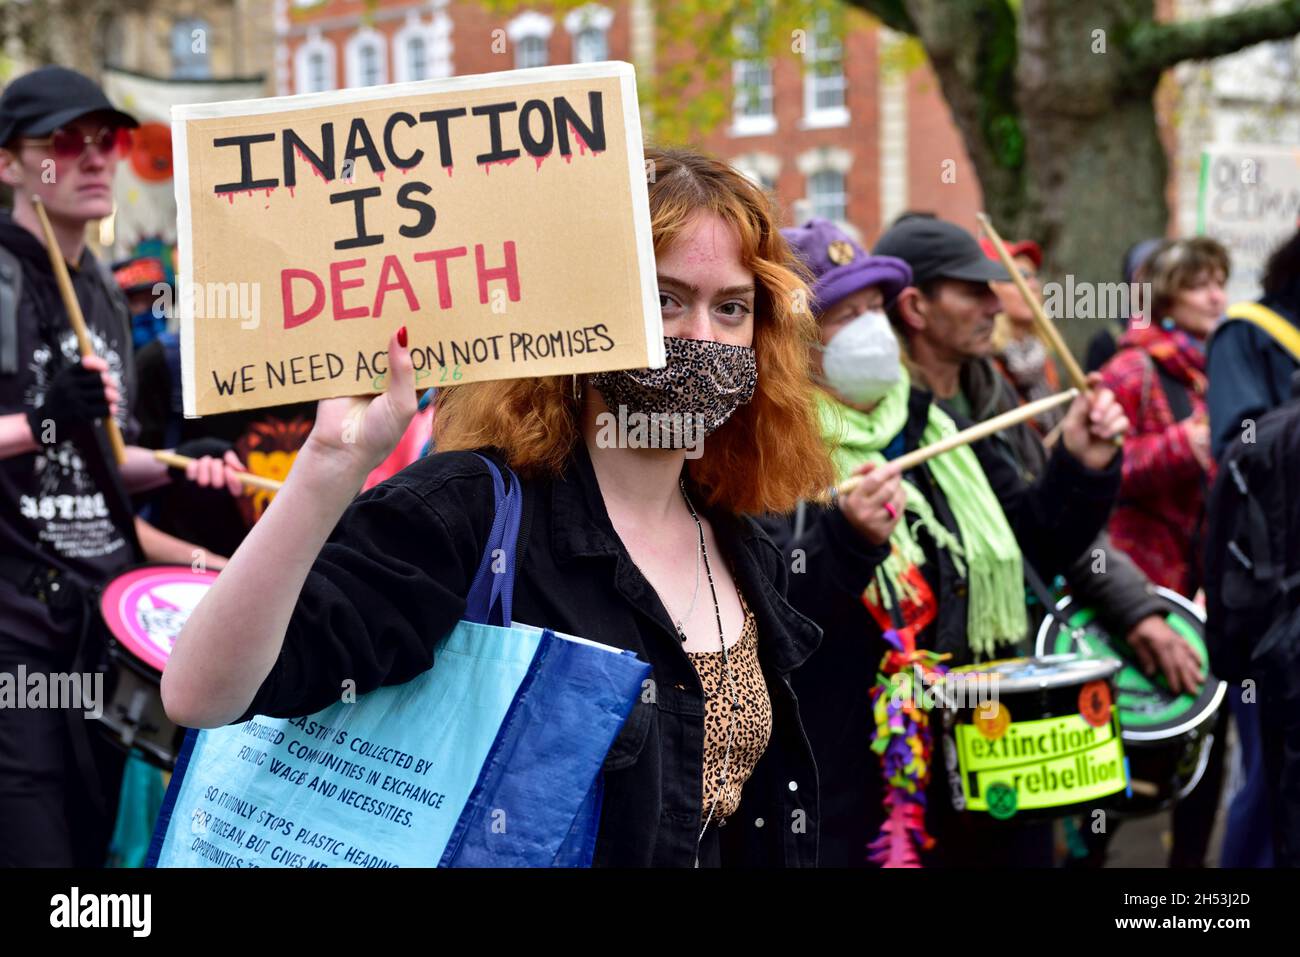 Changement climatique et protestation anticapitaliste à Bristol, 6 septembre 2021, Royaume-Uni Banque D'Images